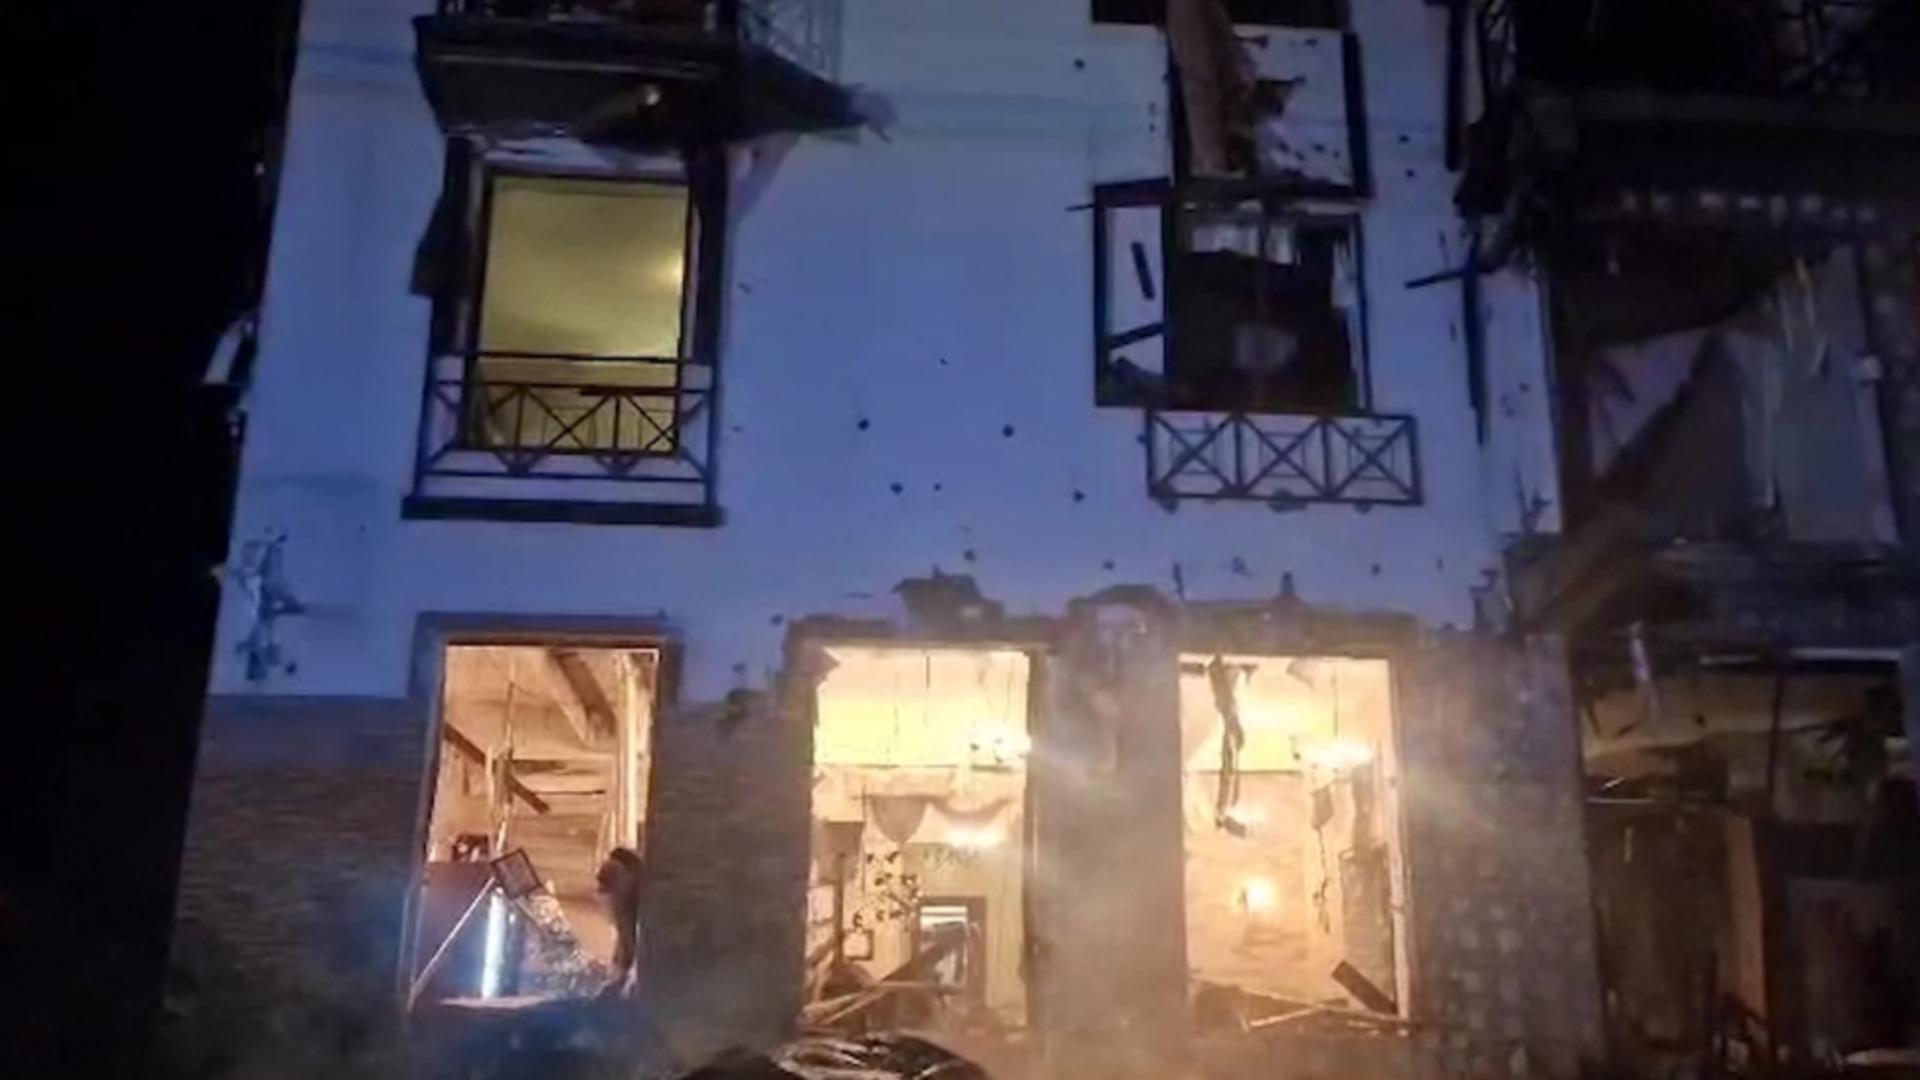 Război în Ucraina, ziua 687. Un hotel din Harkov a fost bombardat: 11 răniți. Printre victime, mai mulți jurnaliști – LIVE TEXT